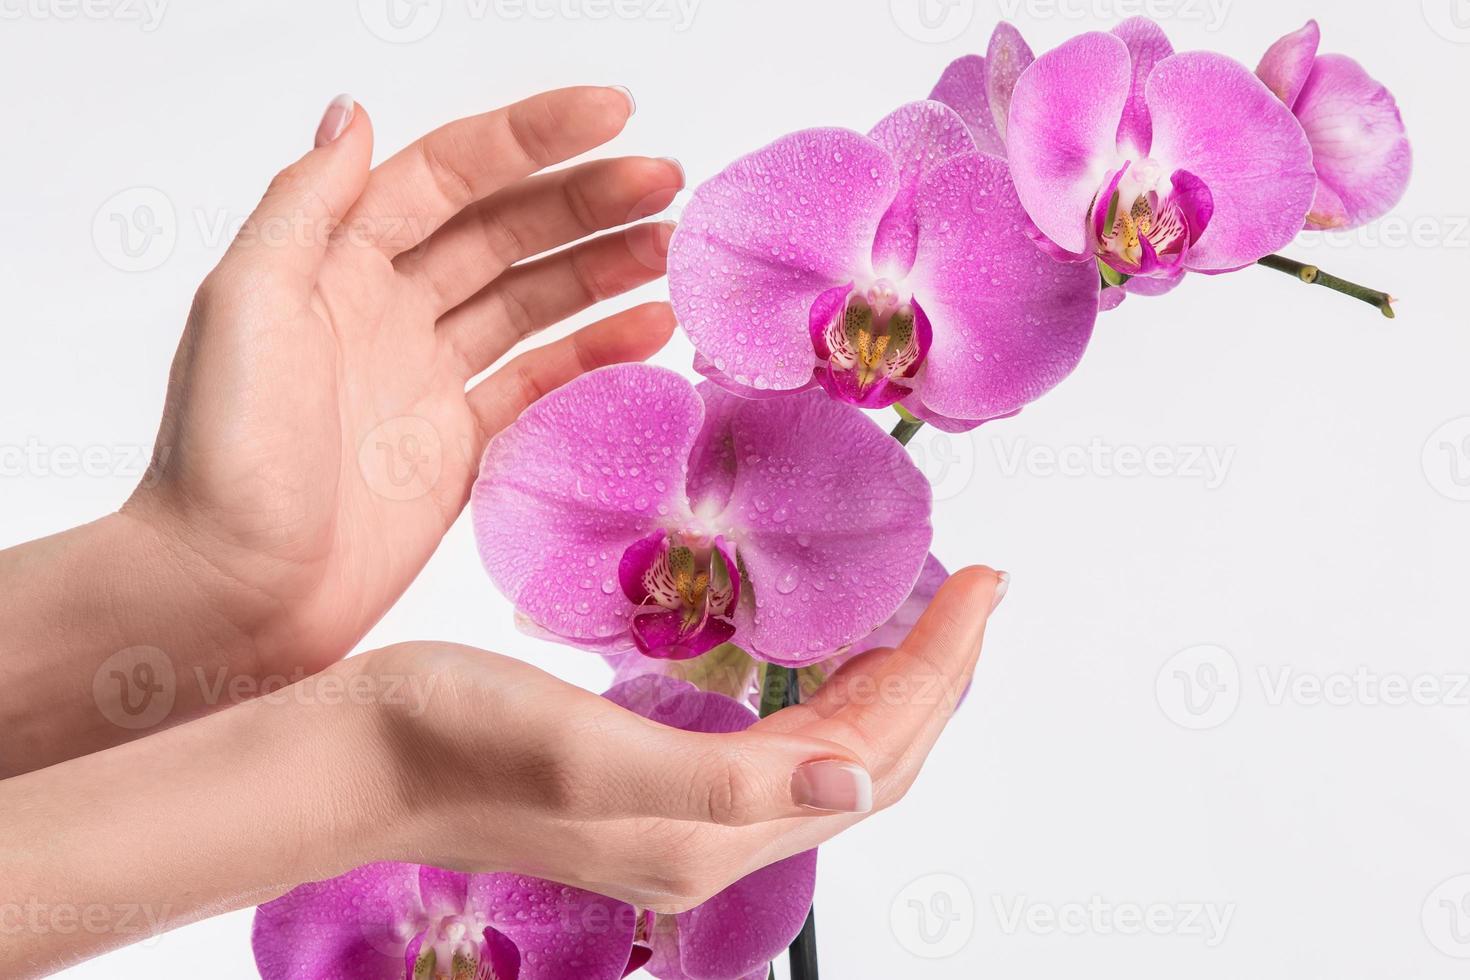 französische Maniküre und Orchideenblüte foto